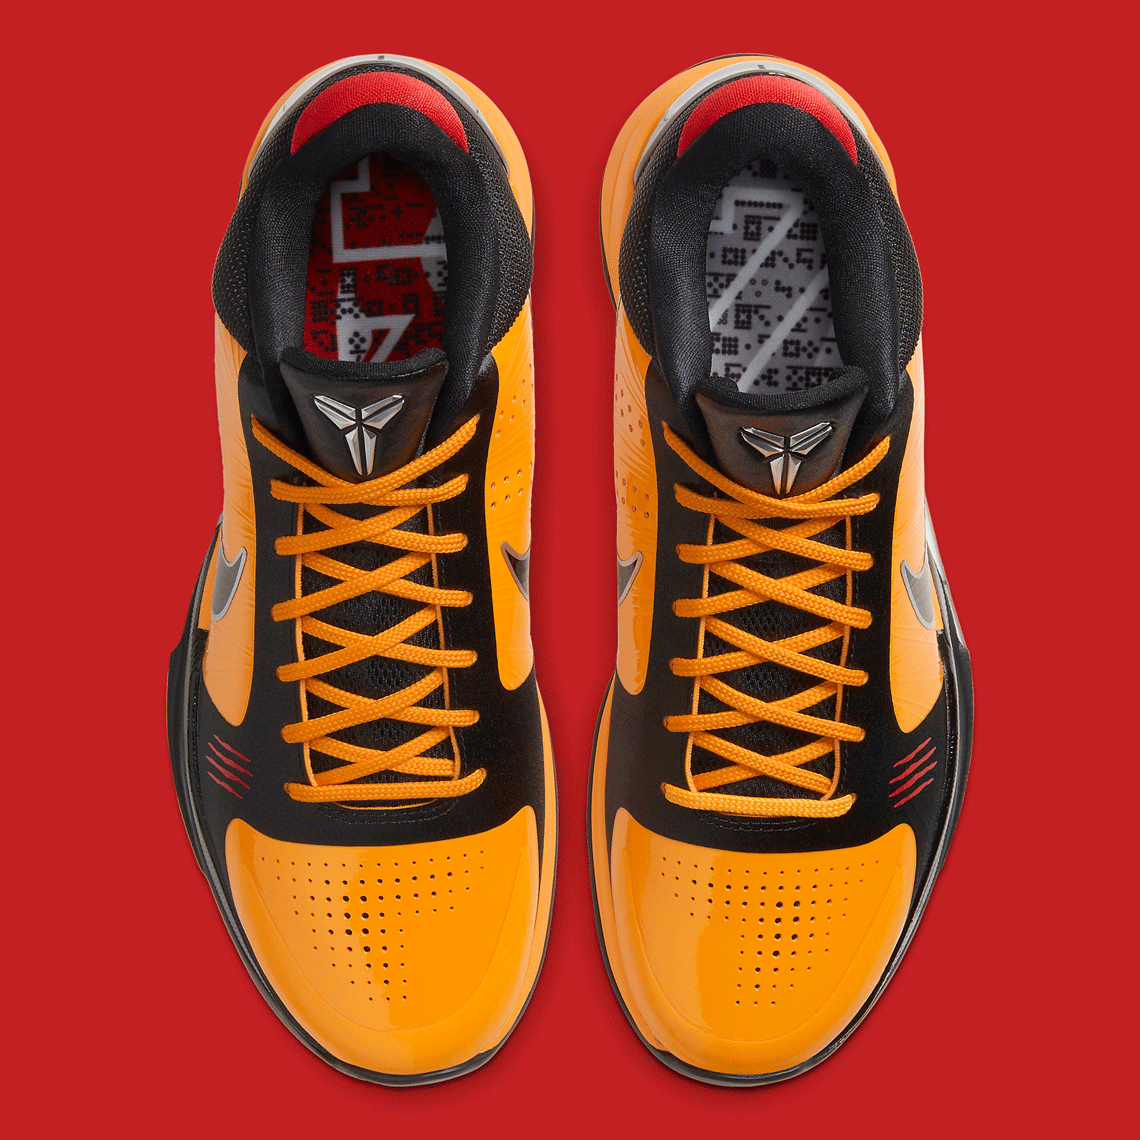 Nike-Kobe-5-Protro-Bruce-Lee-CD4991-700-3-1